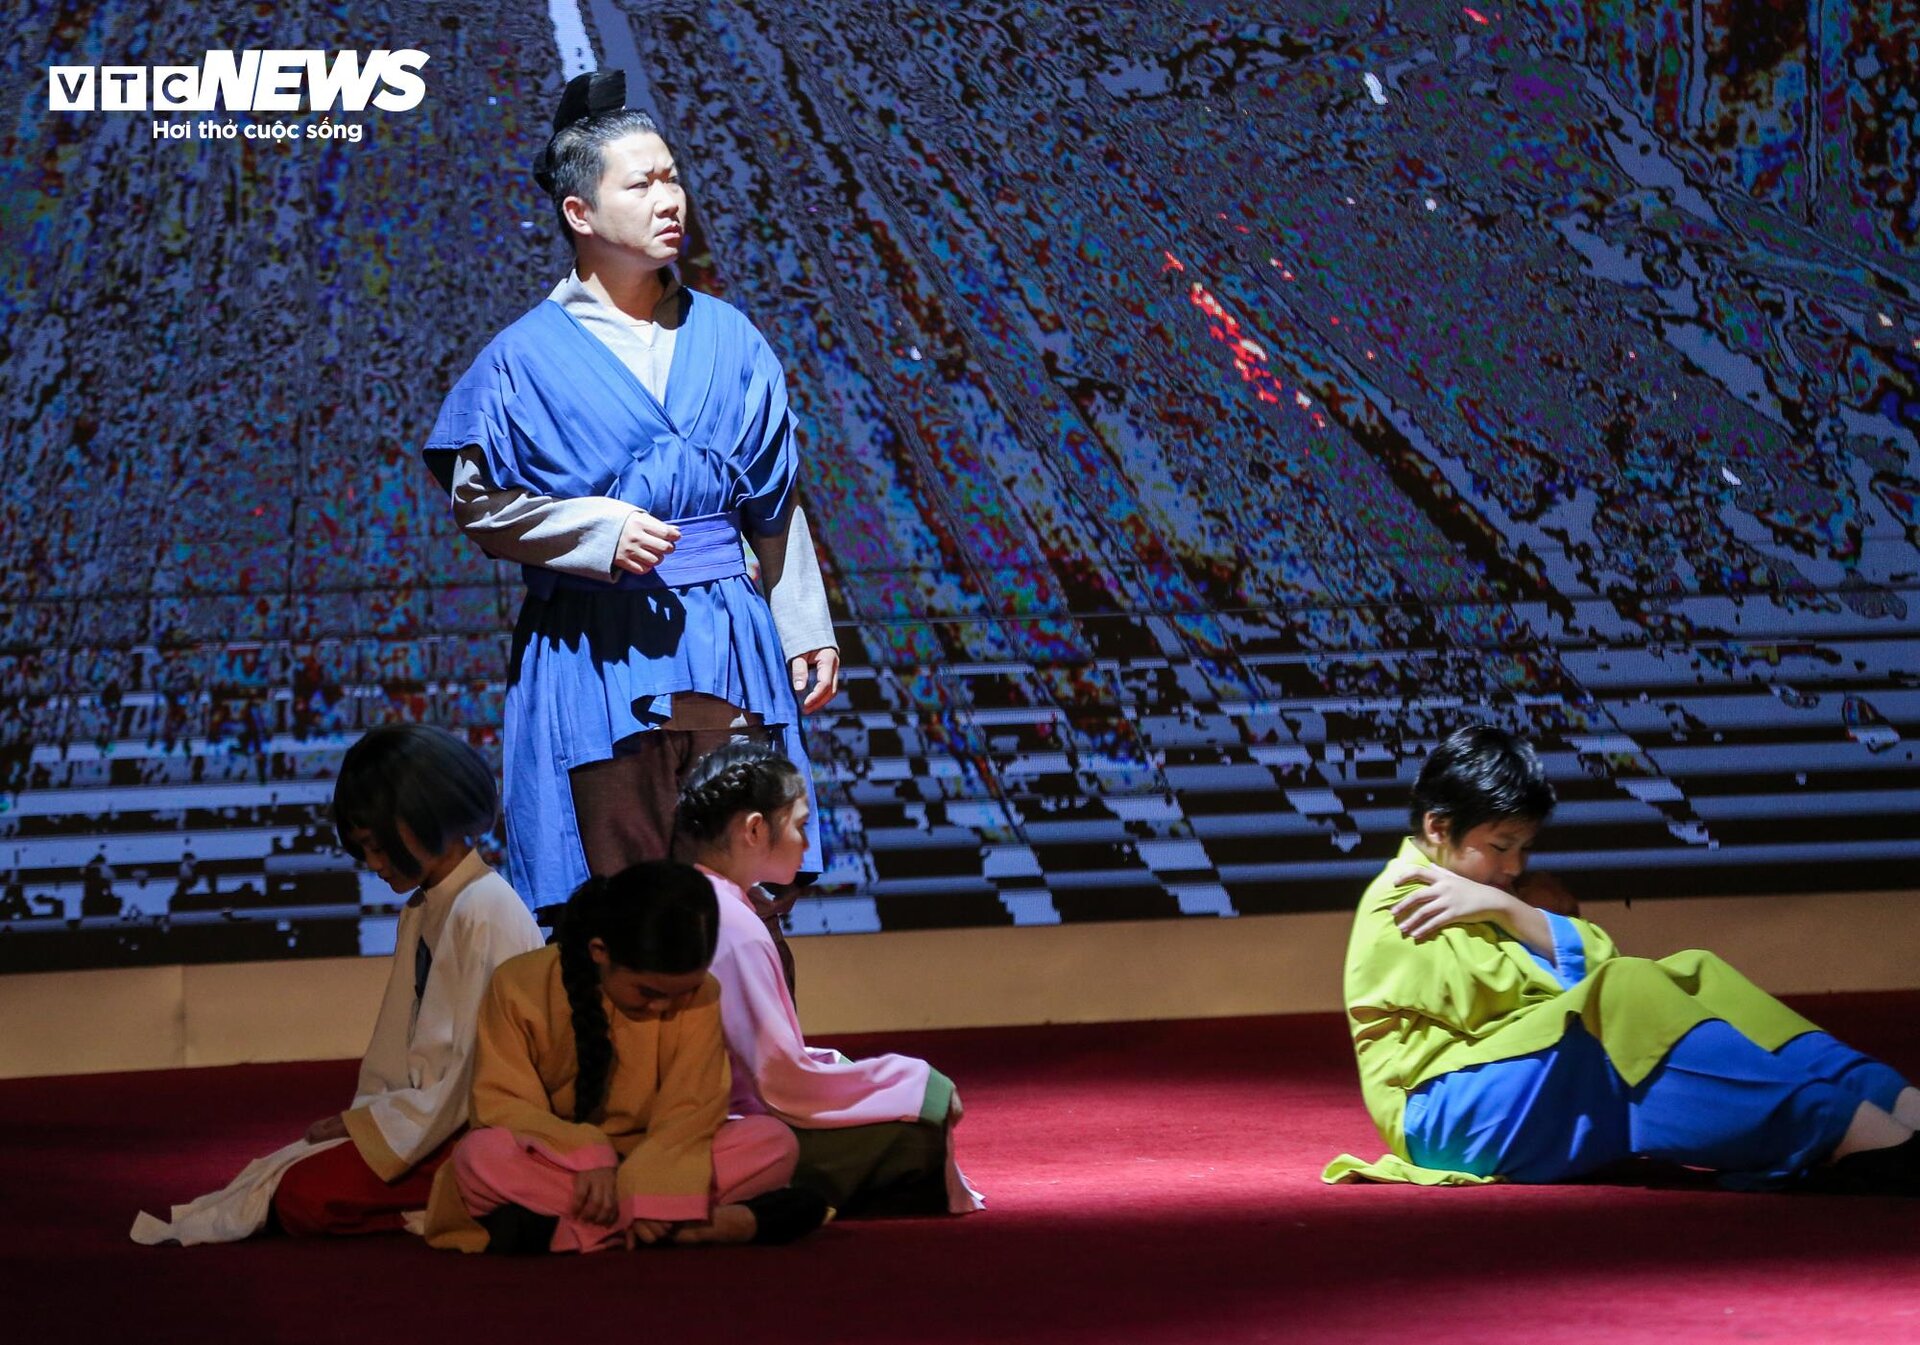 Biểu diễn vở opera kỷ niệm 50 năm quan hệ ngoại giao Việt Nam - Nhật Bản - 10